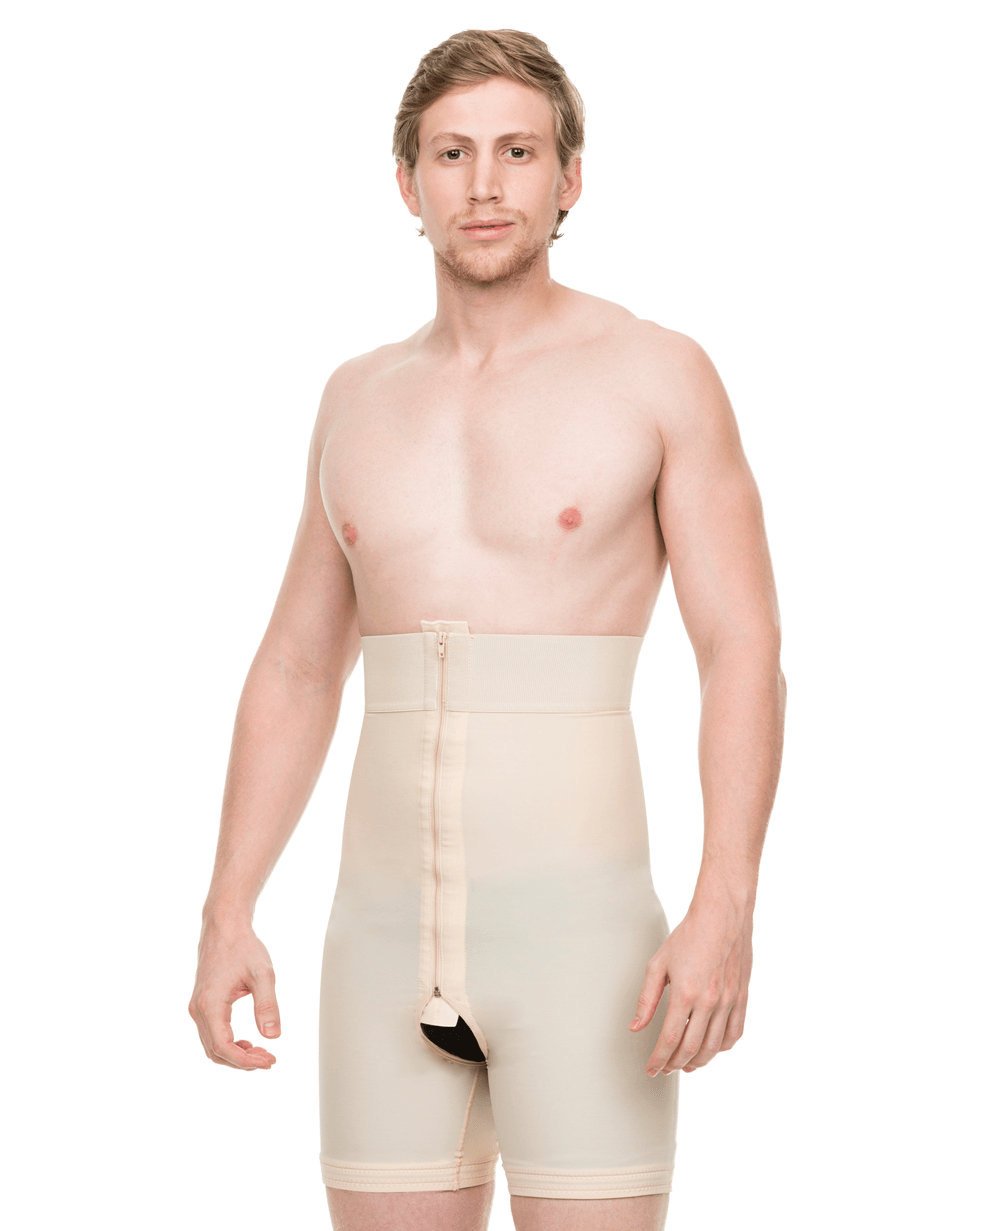 Body Shaping Shorts - High Waist Seamless, Milk Protein Fiber (BSM-715)